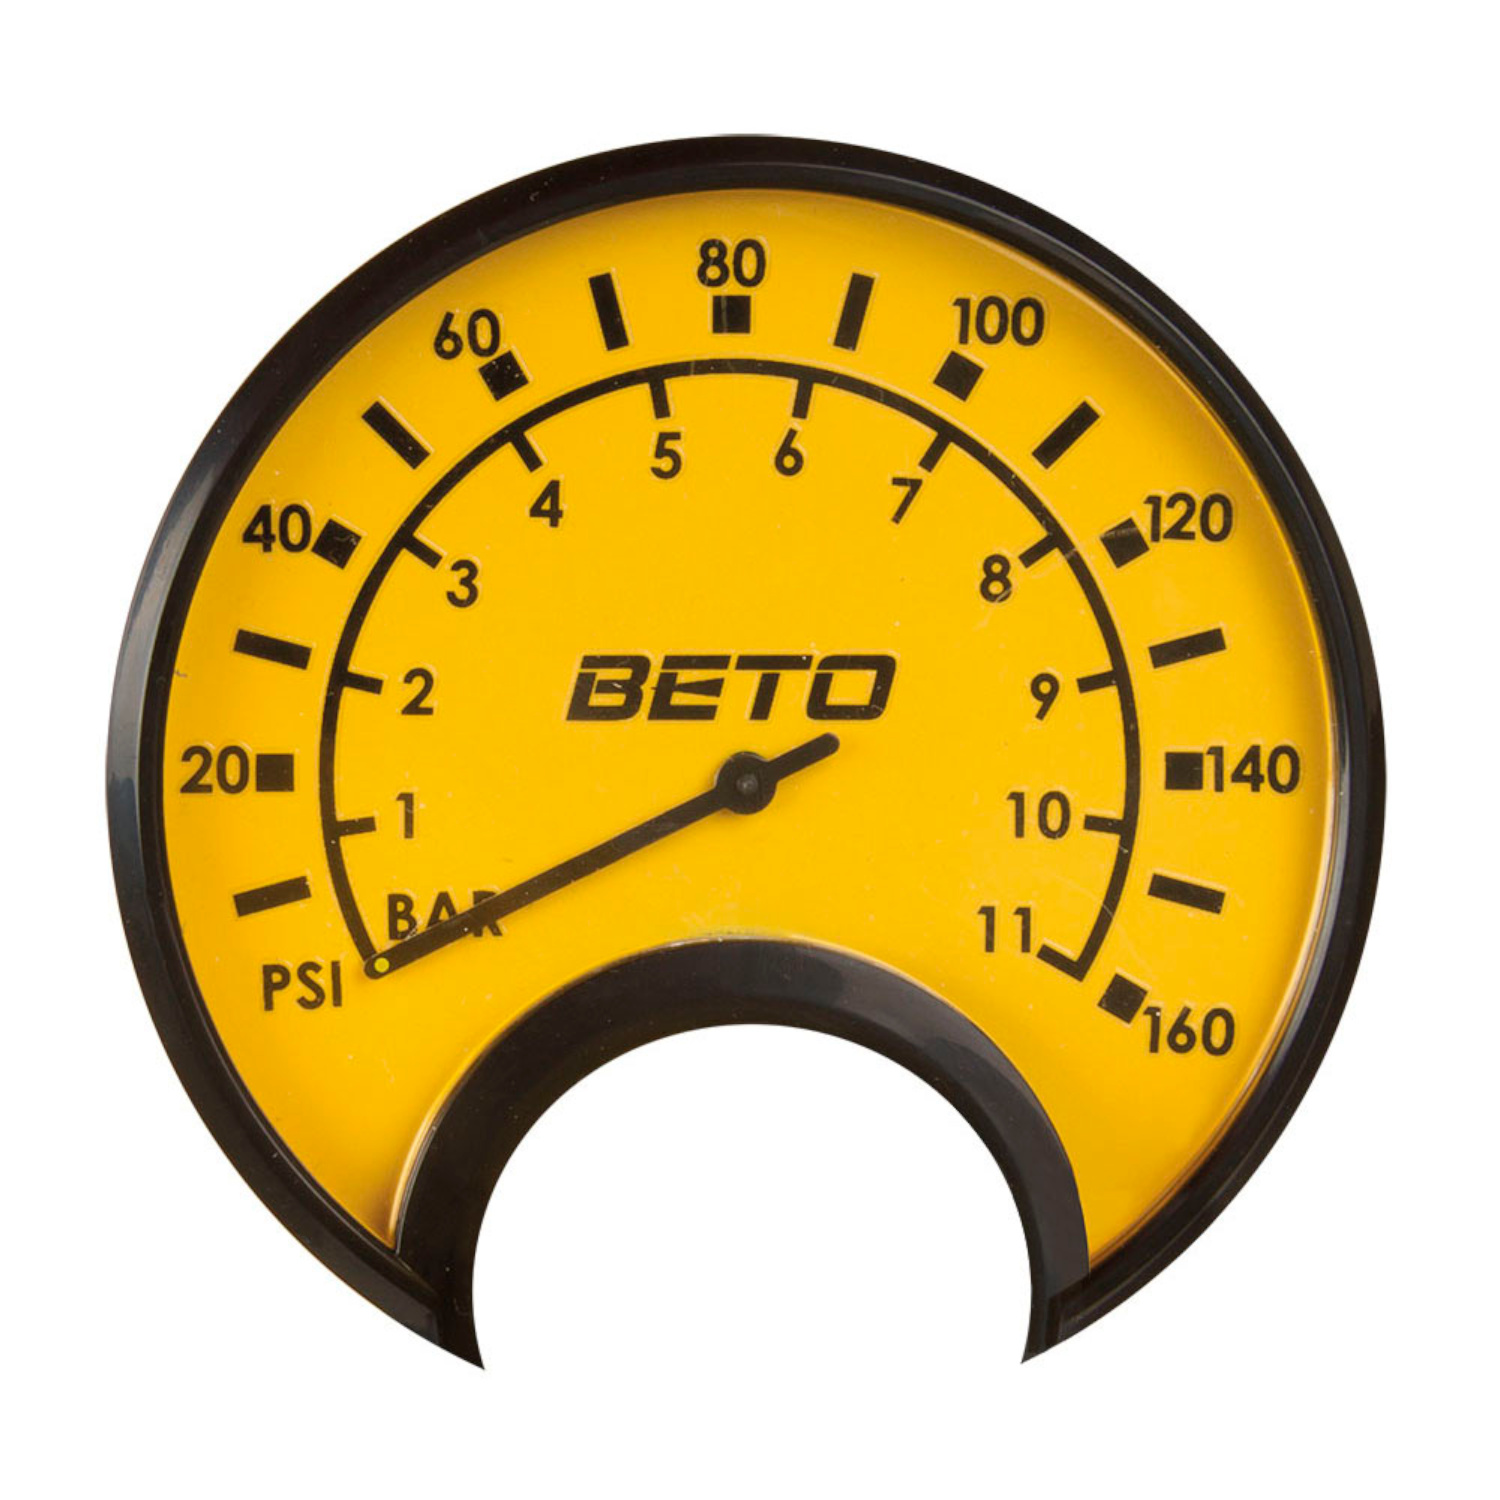 Stand-Pumpe BETO Stahl Award 2014 in gelb, mit Manometer